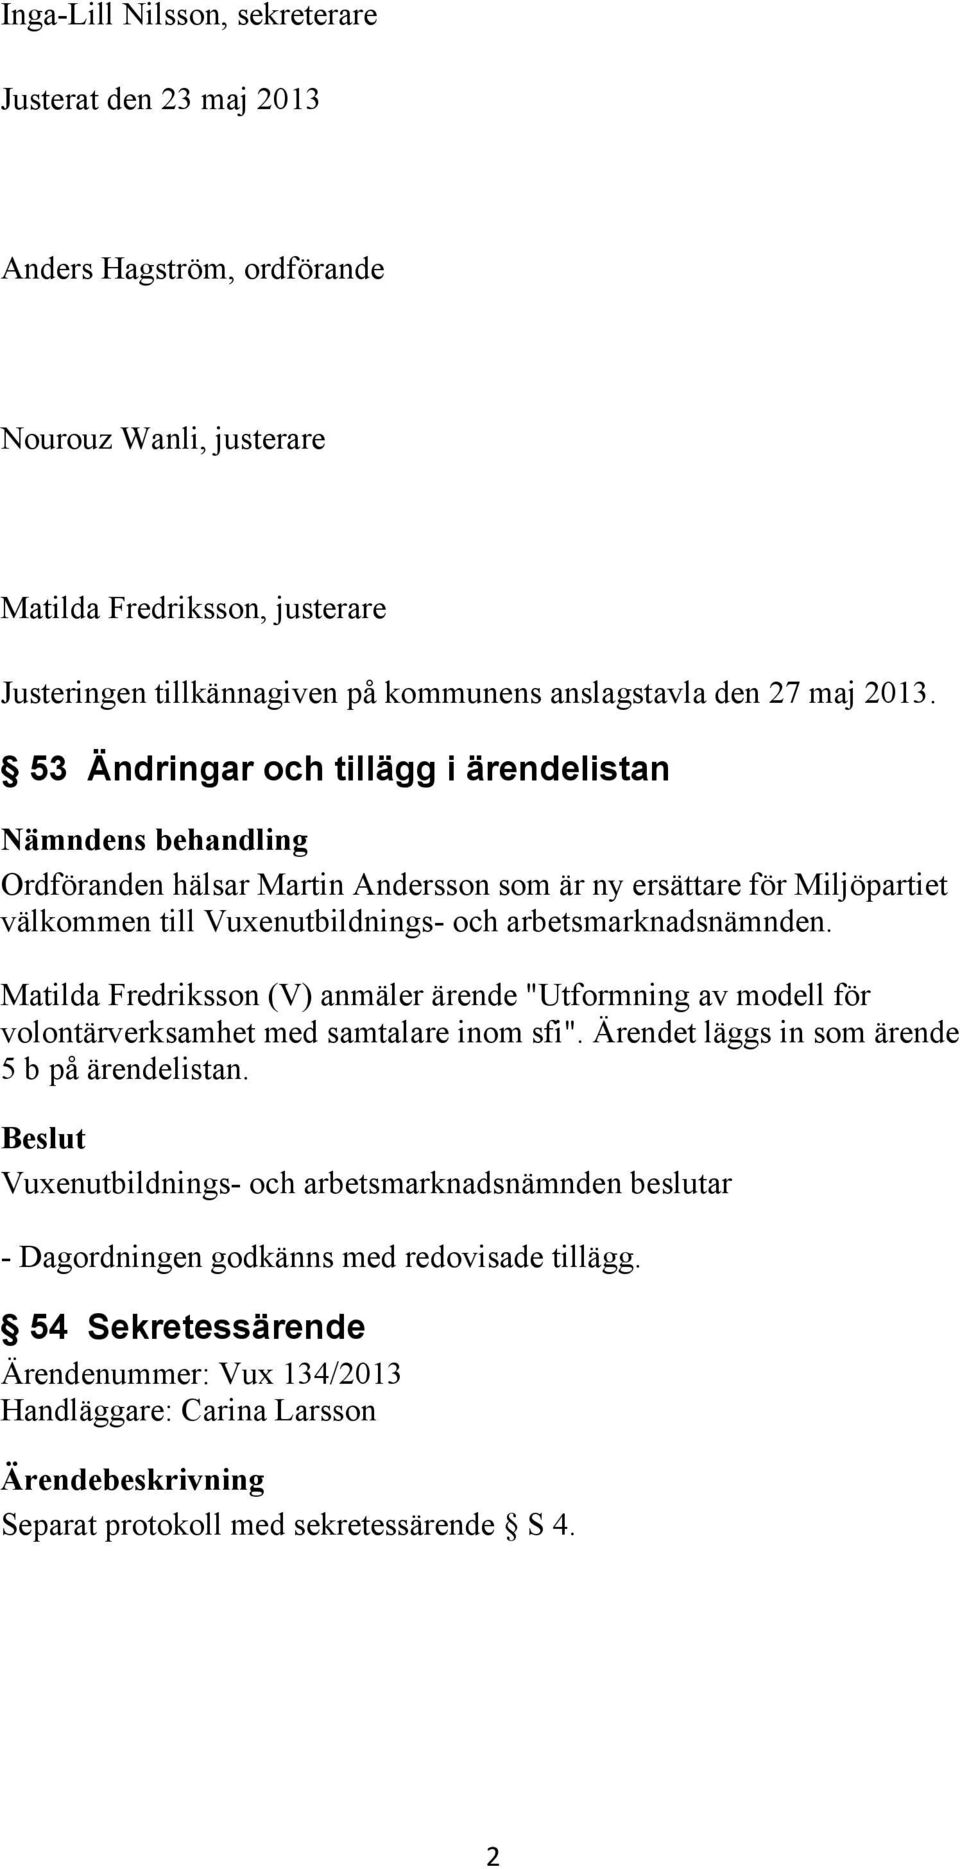 53 Ändringar och tillägg i ärendelistan Ordföranden hälsar Martin Andersson som är ny ersättare för Miljöpartiet välkommen till Vuxenutbildnings- och arbetsmarknadsnämnden.